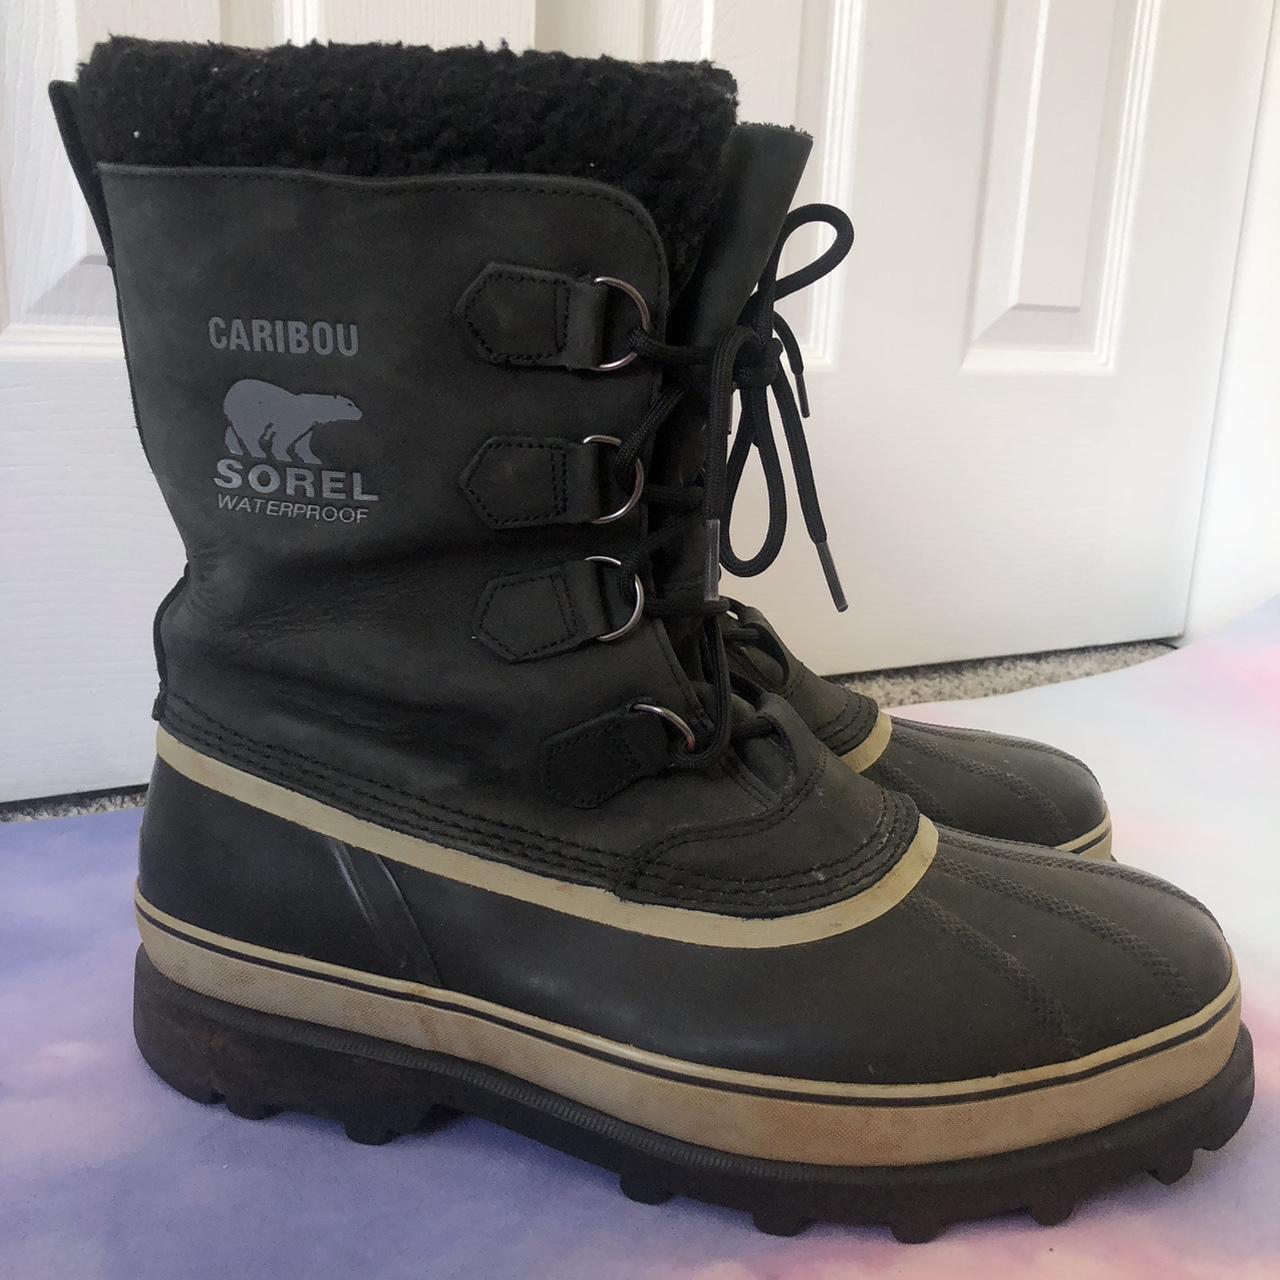 Men’s Sorel caribou winter boots, size 13 Comes... - Depop